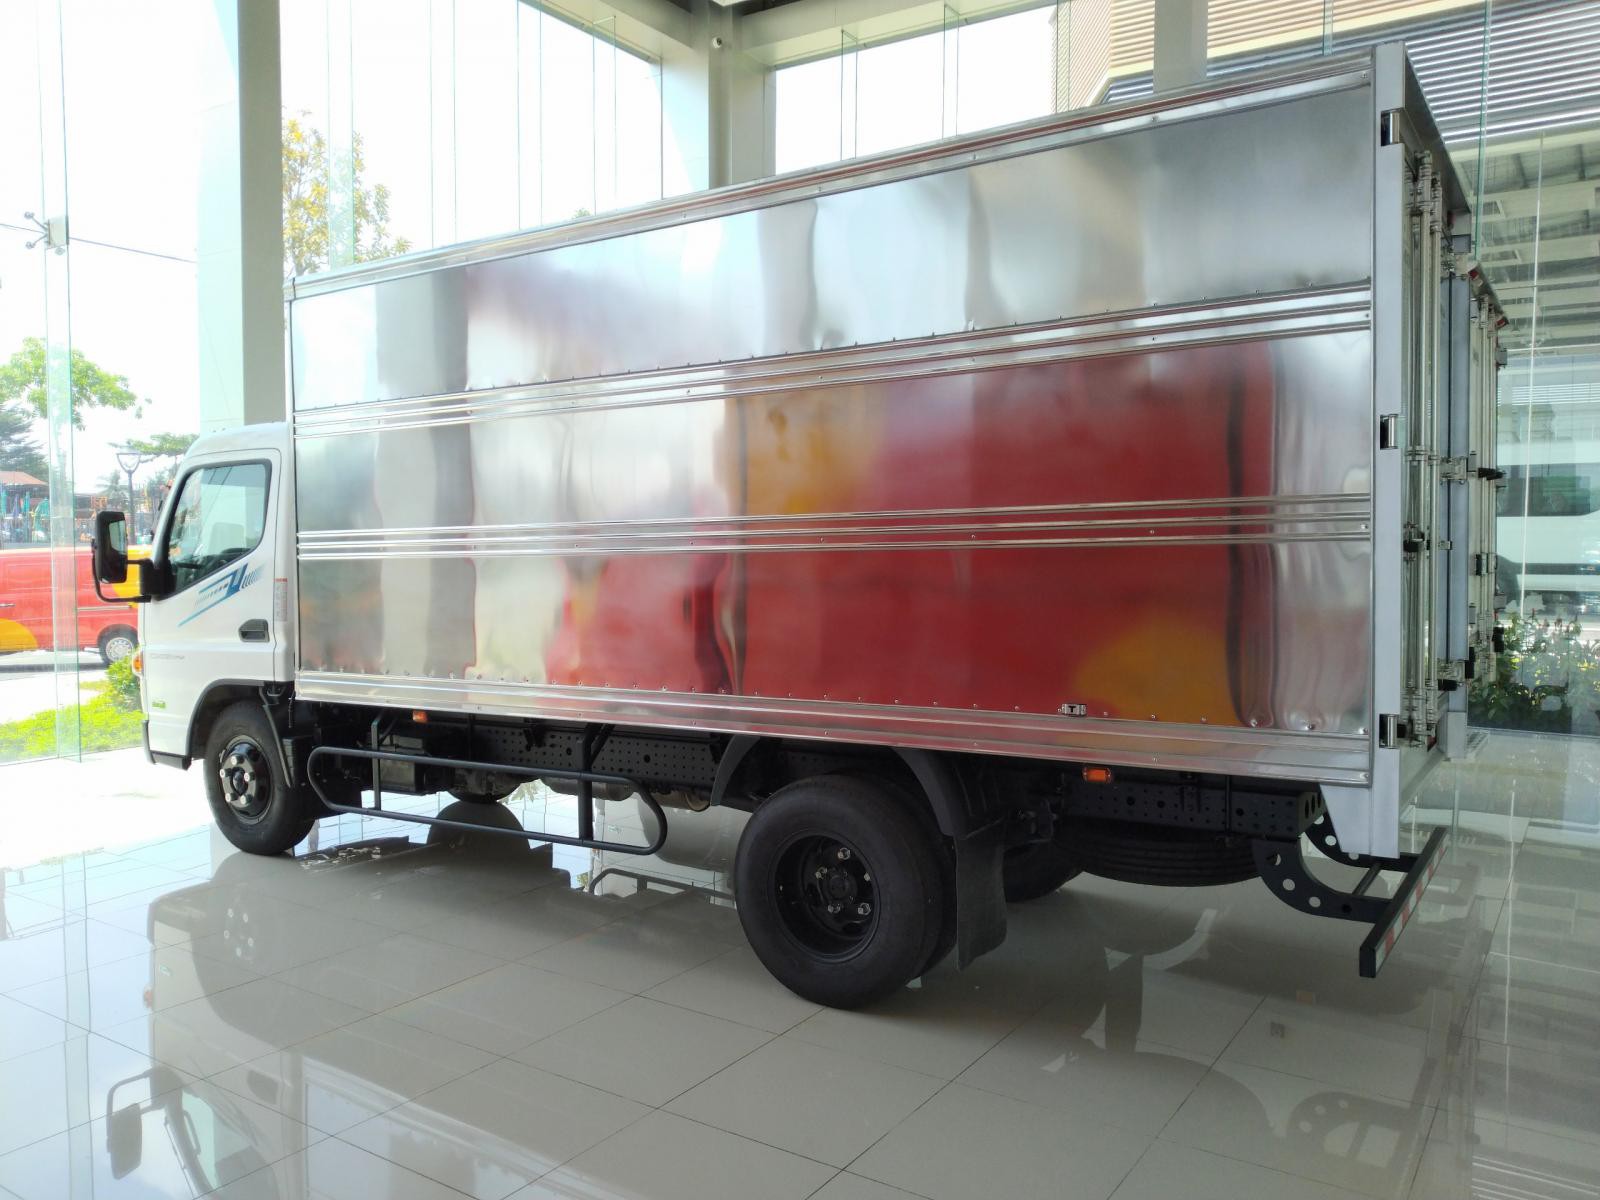 Xe tải Mitsubishi Fuso Canter TF4.9 tải 1.995 tấn thùng dài 4.45 m